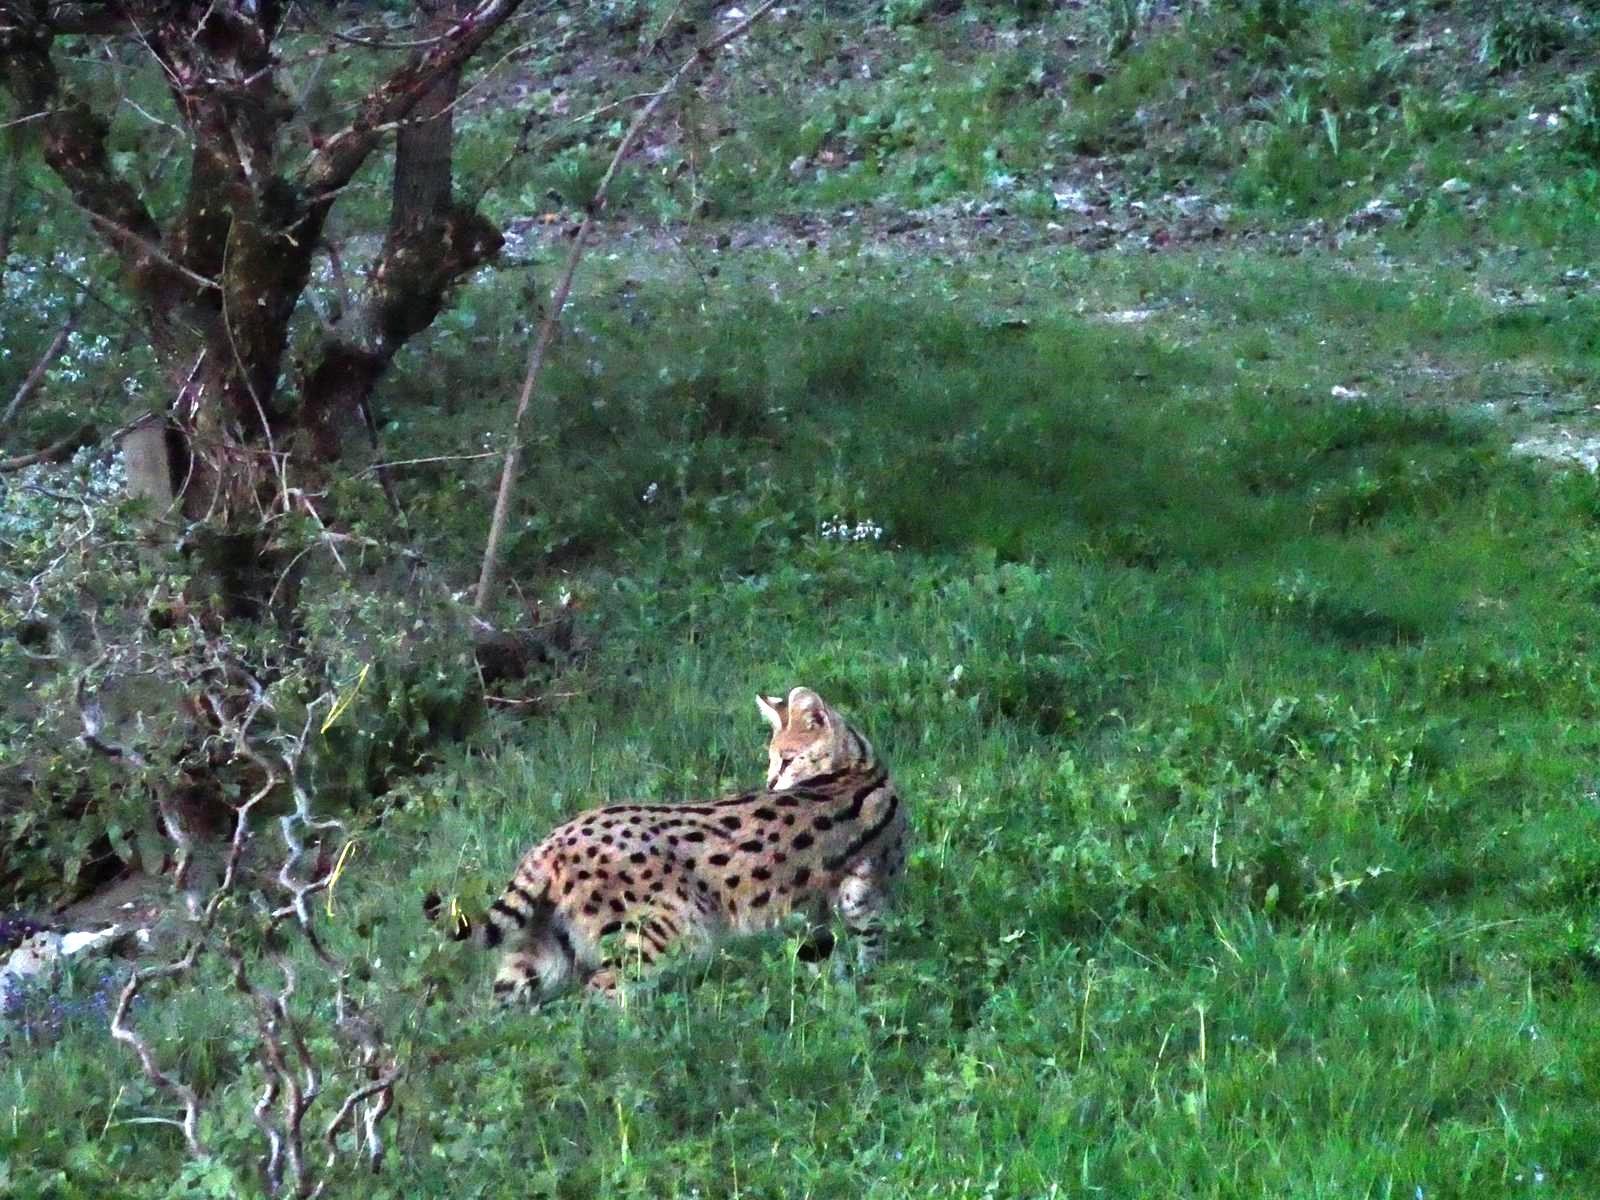 Le serval a été capturé dans un champ près de Wenslingen.